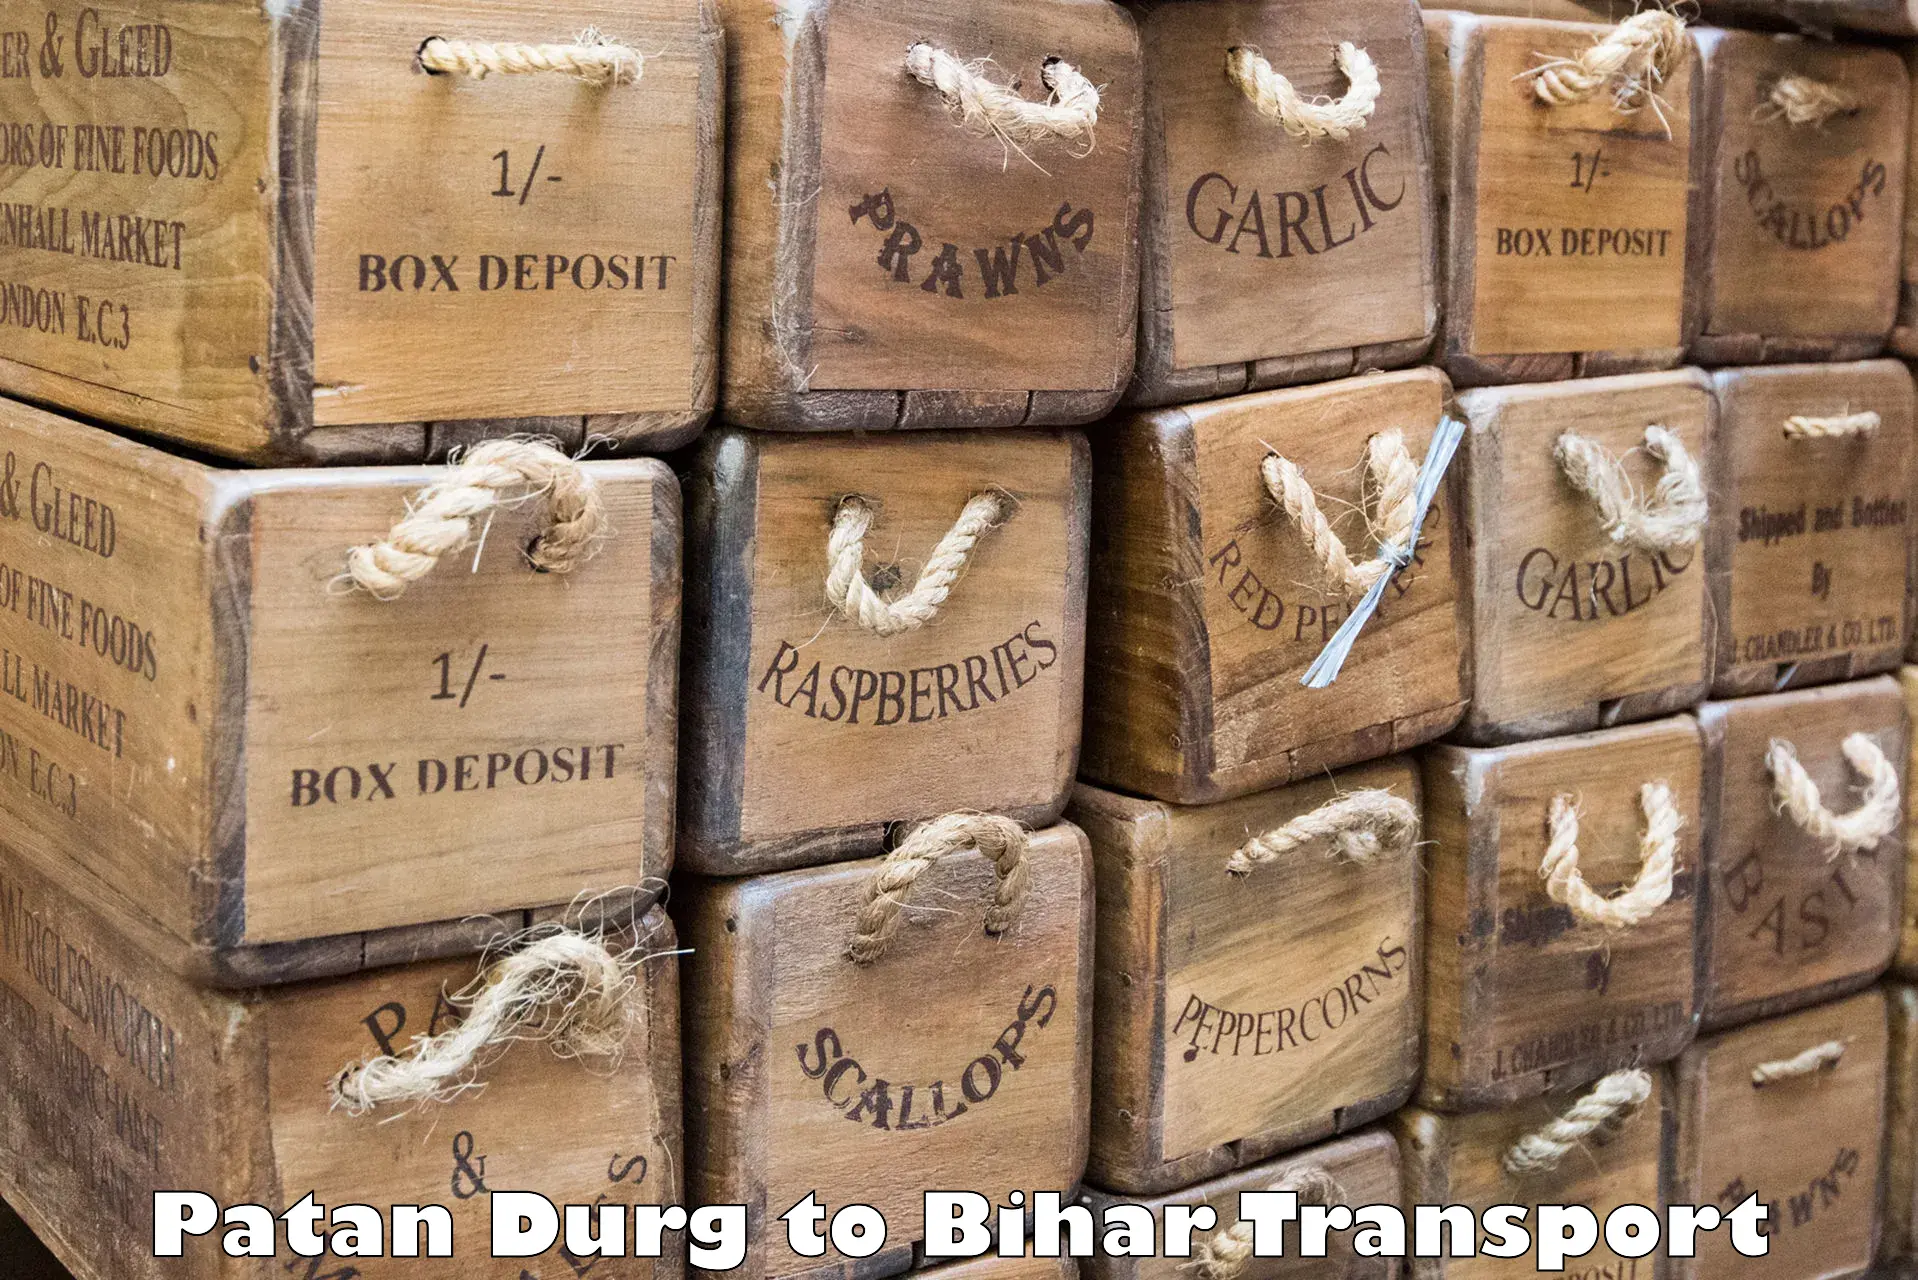 Lorry transport service Patan Durg to Arrah